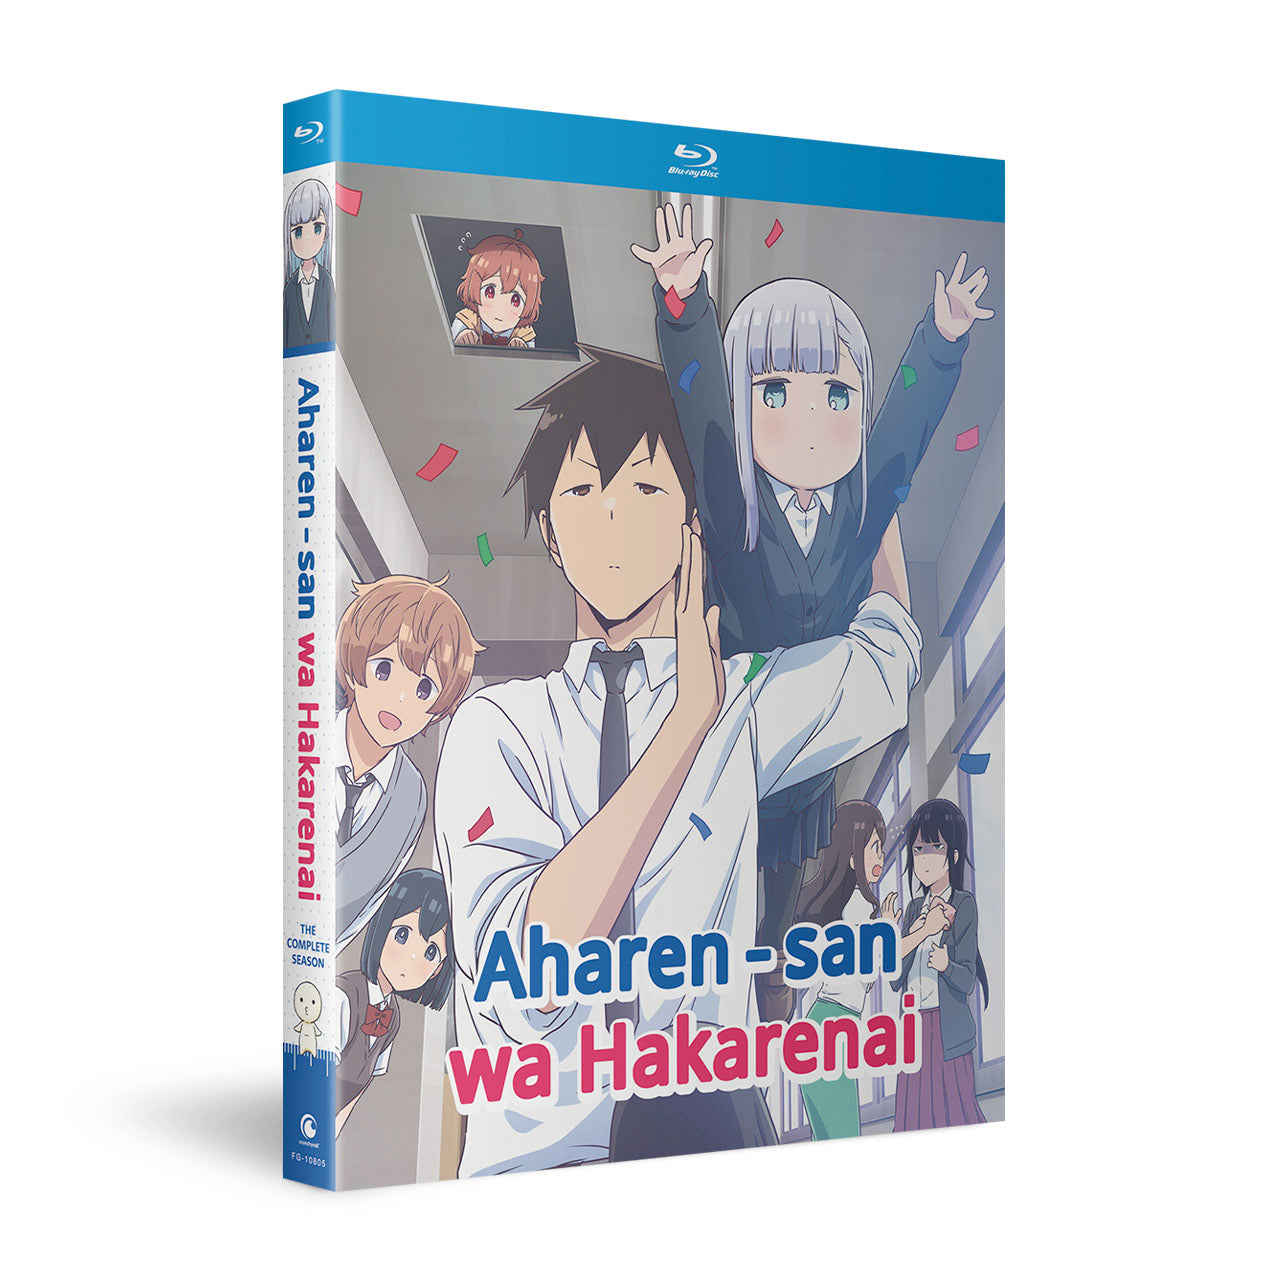 Aharen-san wa Hakarenai - The Complete Season - Blu-Ray image count 1